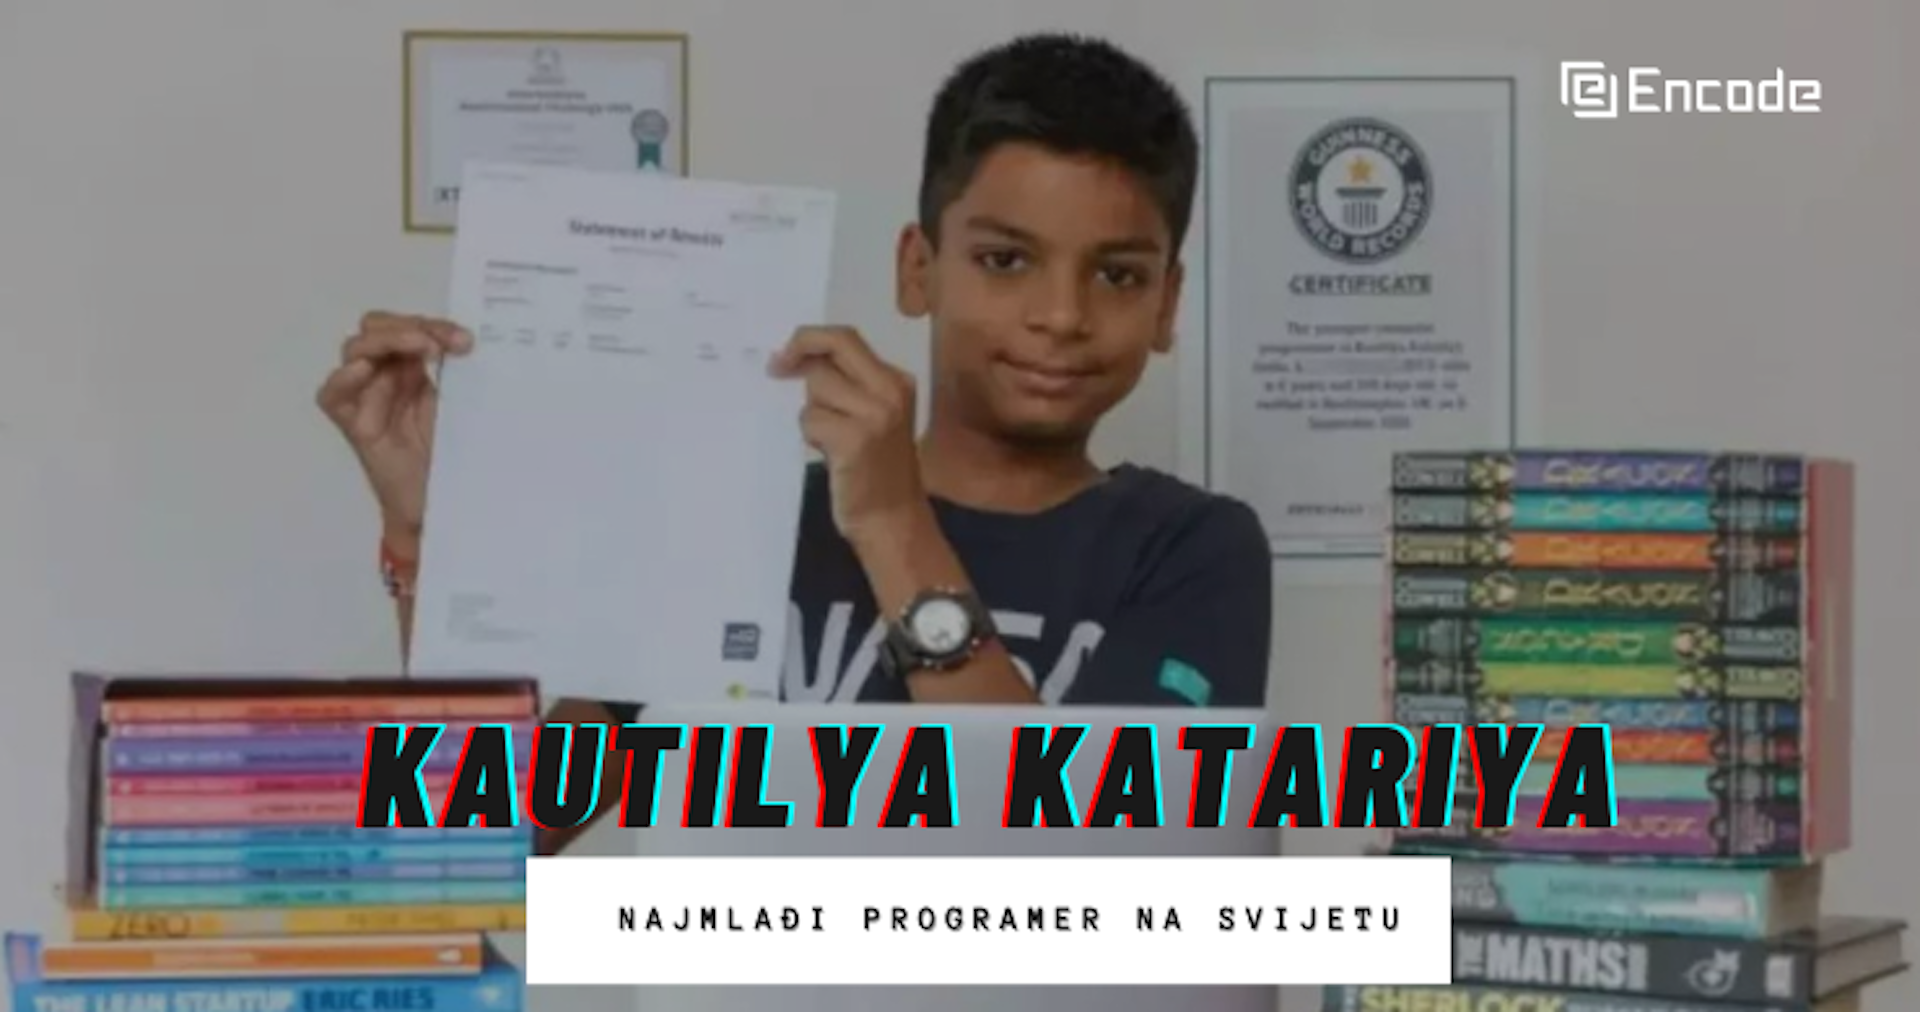 Kautilya Katariya – najmlađi programer na svijetu